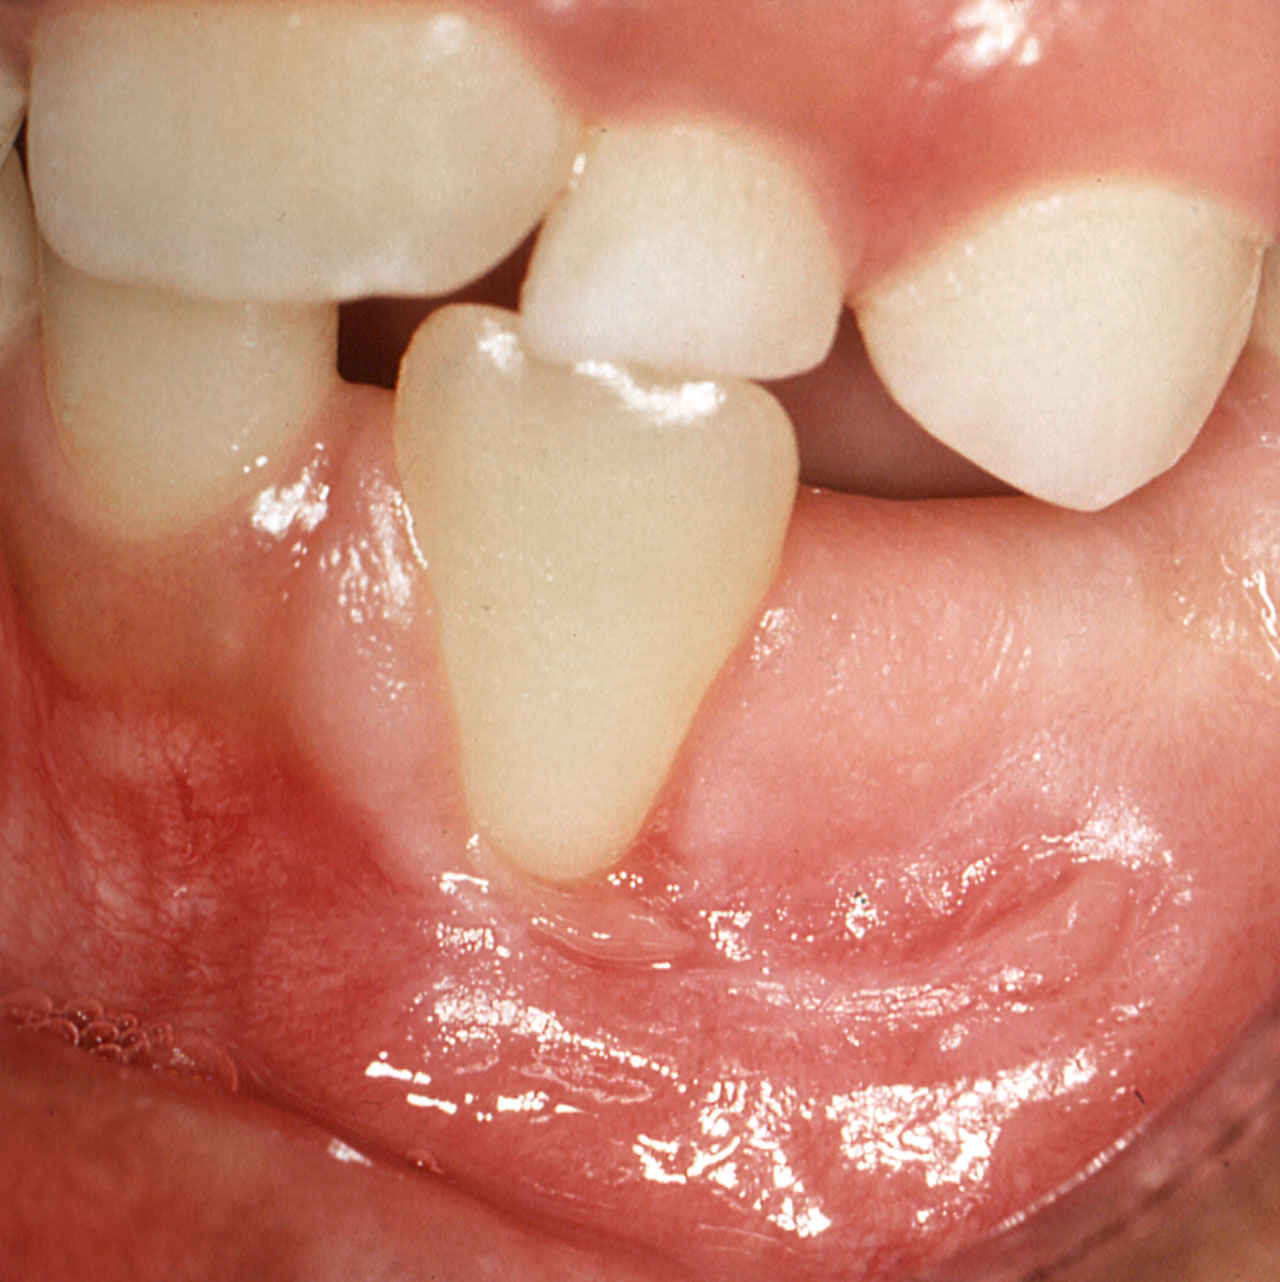 Abb. 8 Rezession bis zur Schmelz-Zement-Grenze an Zahn 32; an Zahn 31 liegt der Gingivarand deutlich weiter koronal, Zahn 33 ist noch nicht durchgebrochen, die Schleimhaut des zahnlosen Alveolar- fortsatzes weist eine horizontale Vernarbung auf.